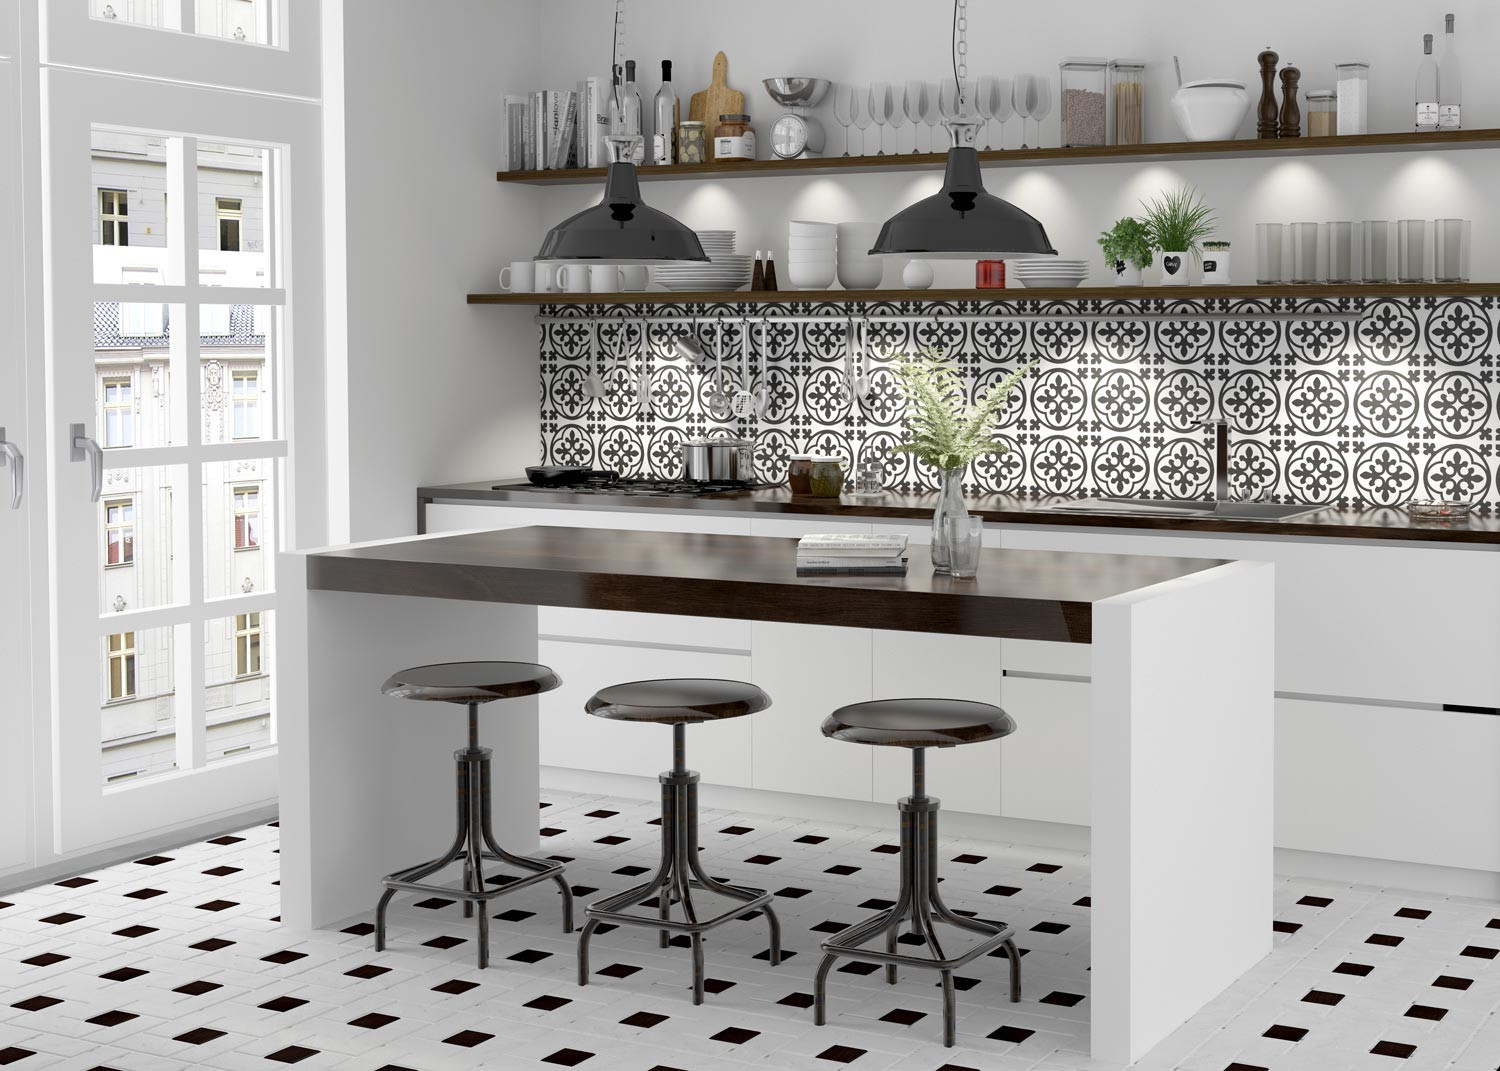 Moroccan Tile Backsplash Kitchen
 Kitchen Tile Backsplash Ideas Trends and Designs